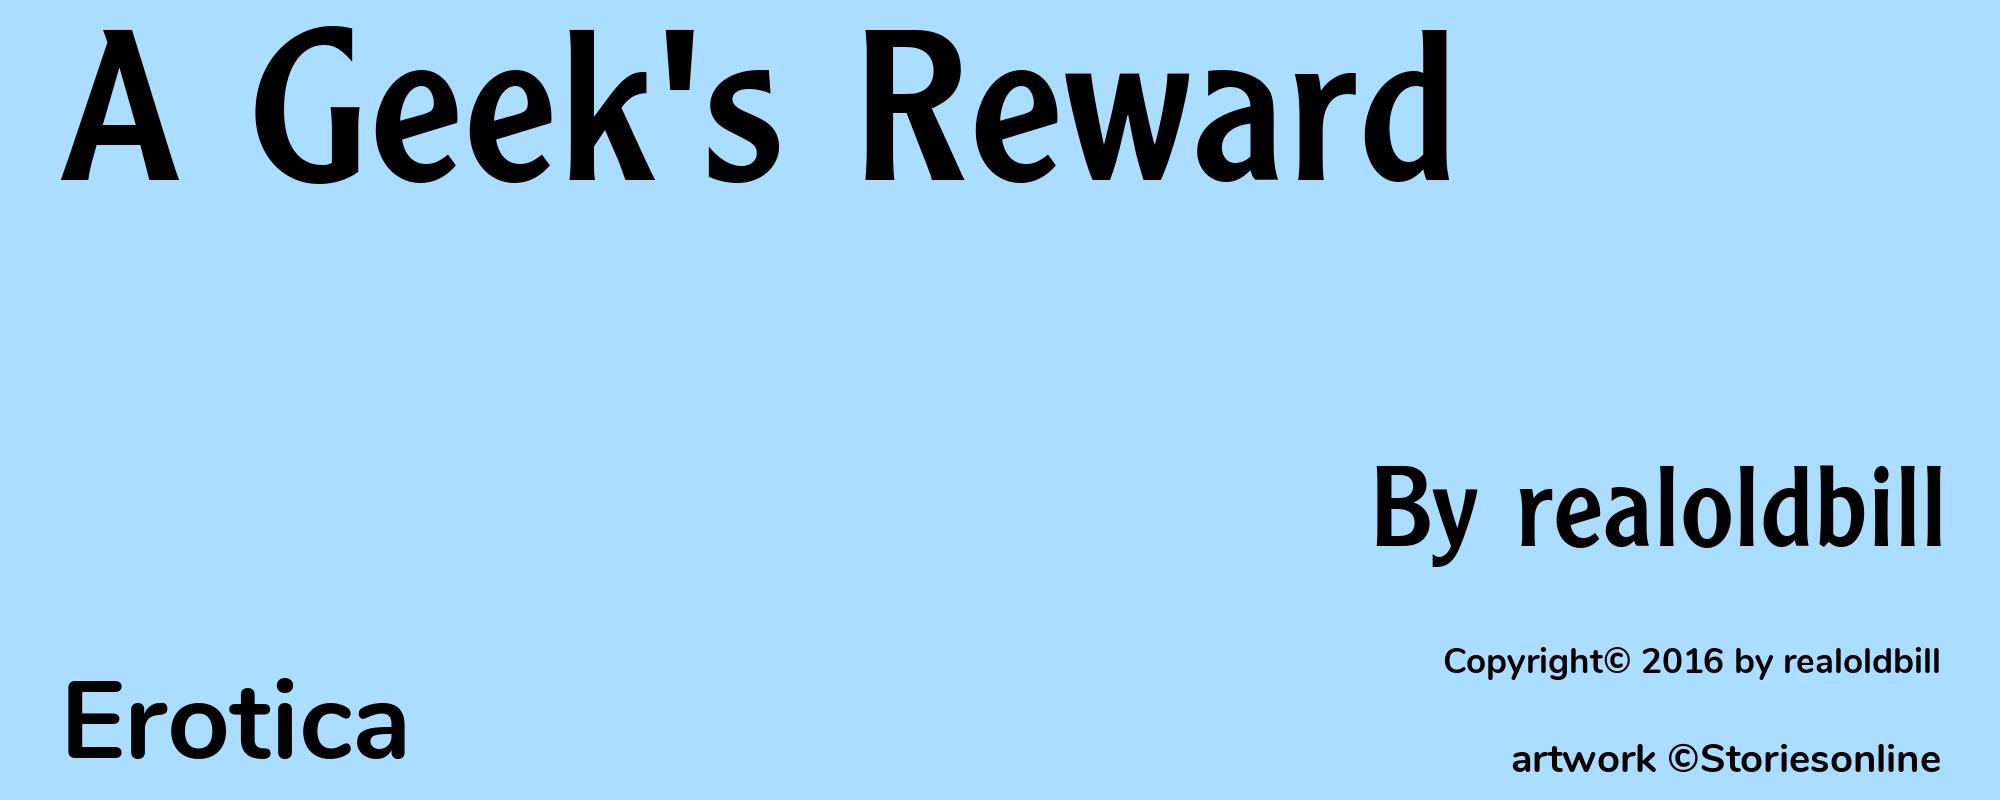 A Geek's Reward - Cover